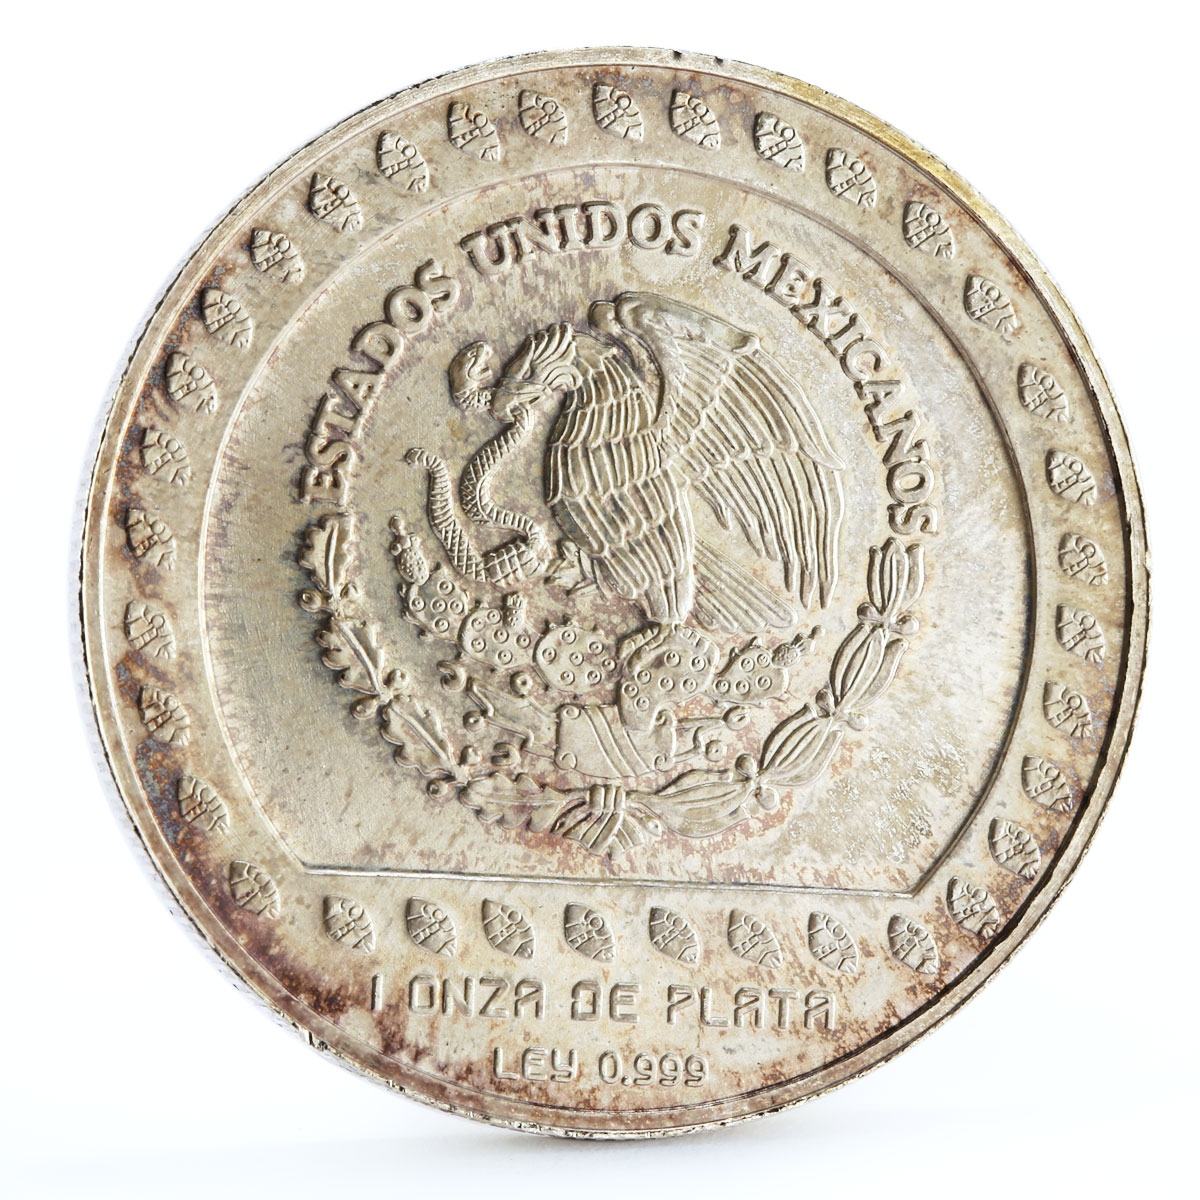 Mexico 5 pesos Guererro Aguila The Eagle Warrior silver coin 1993